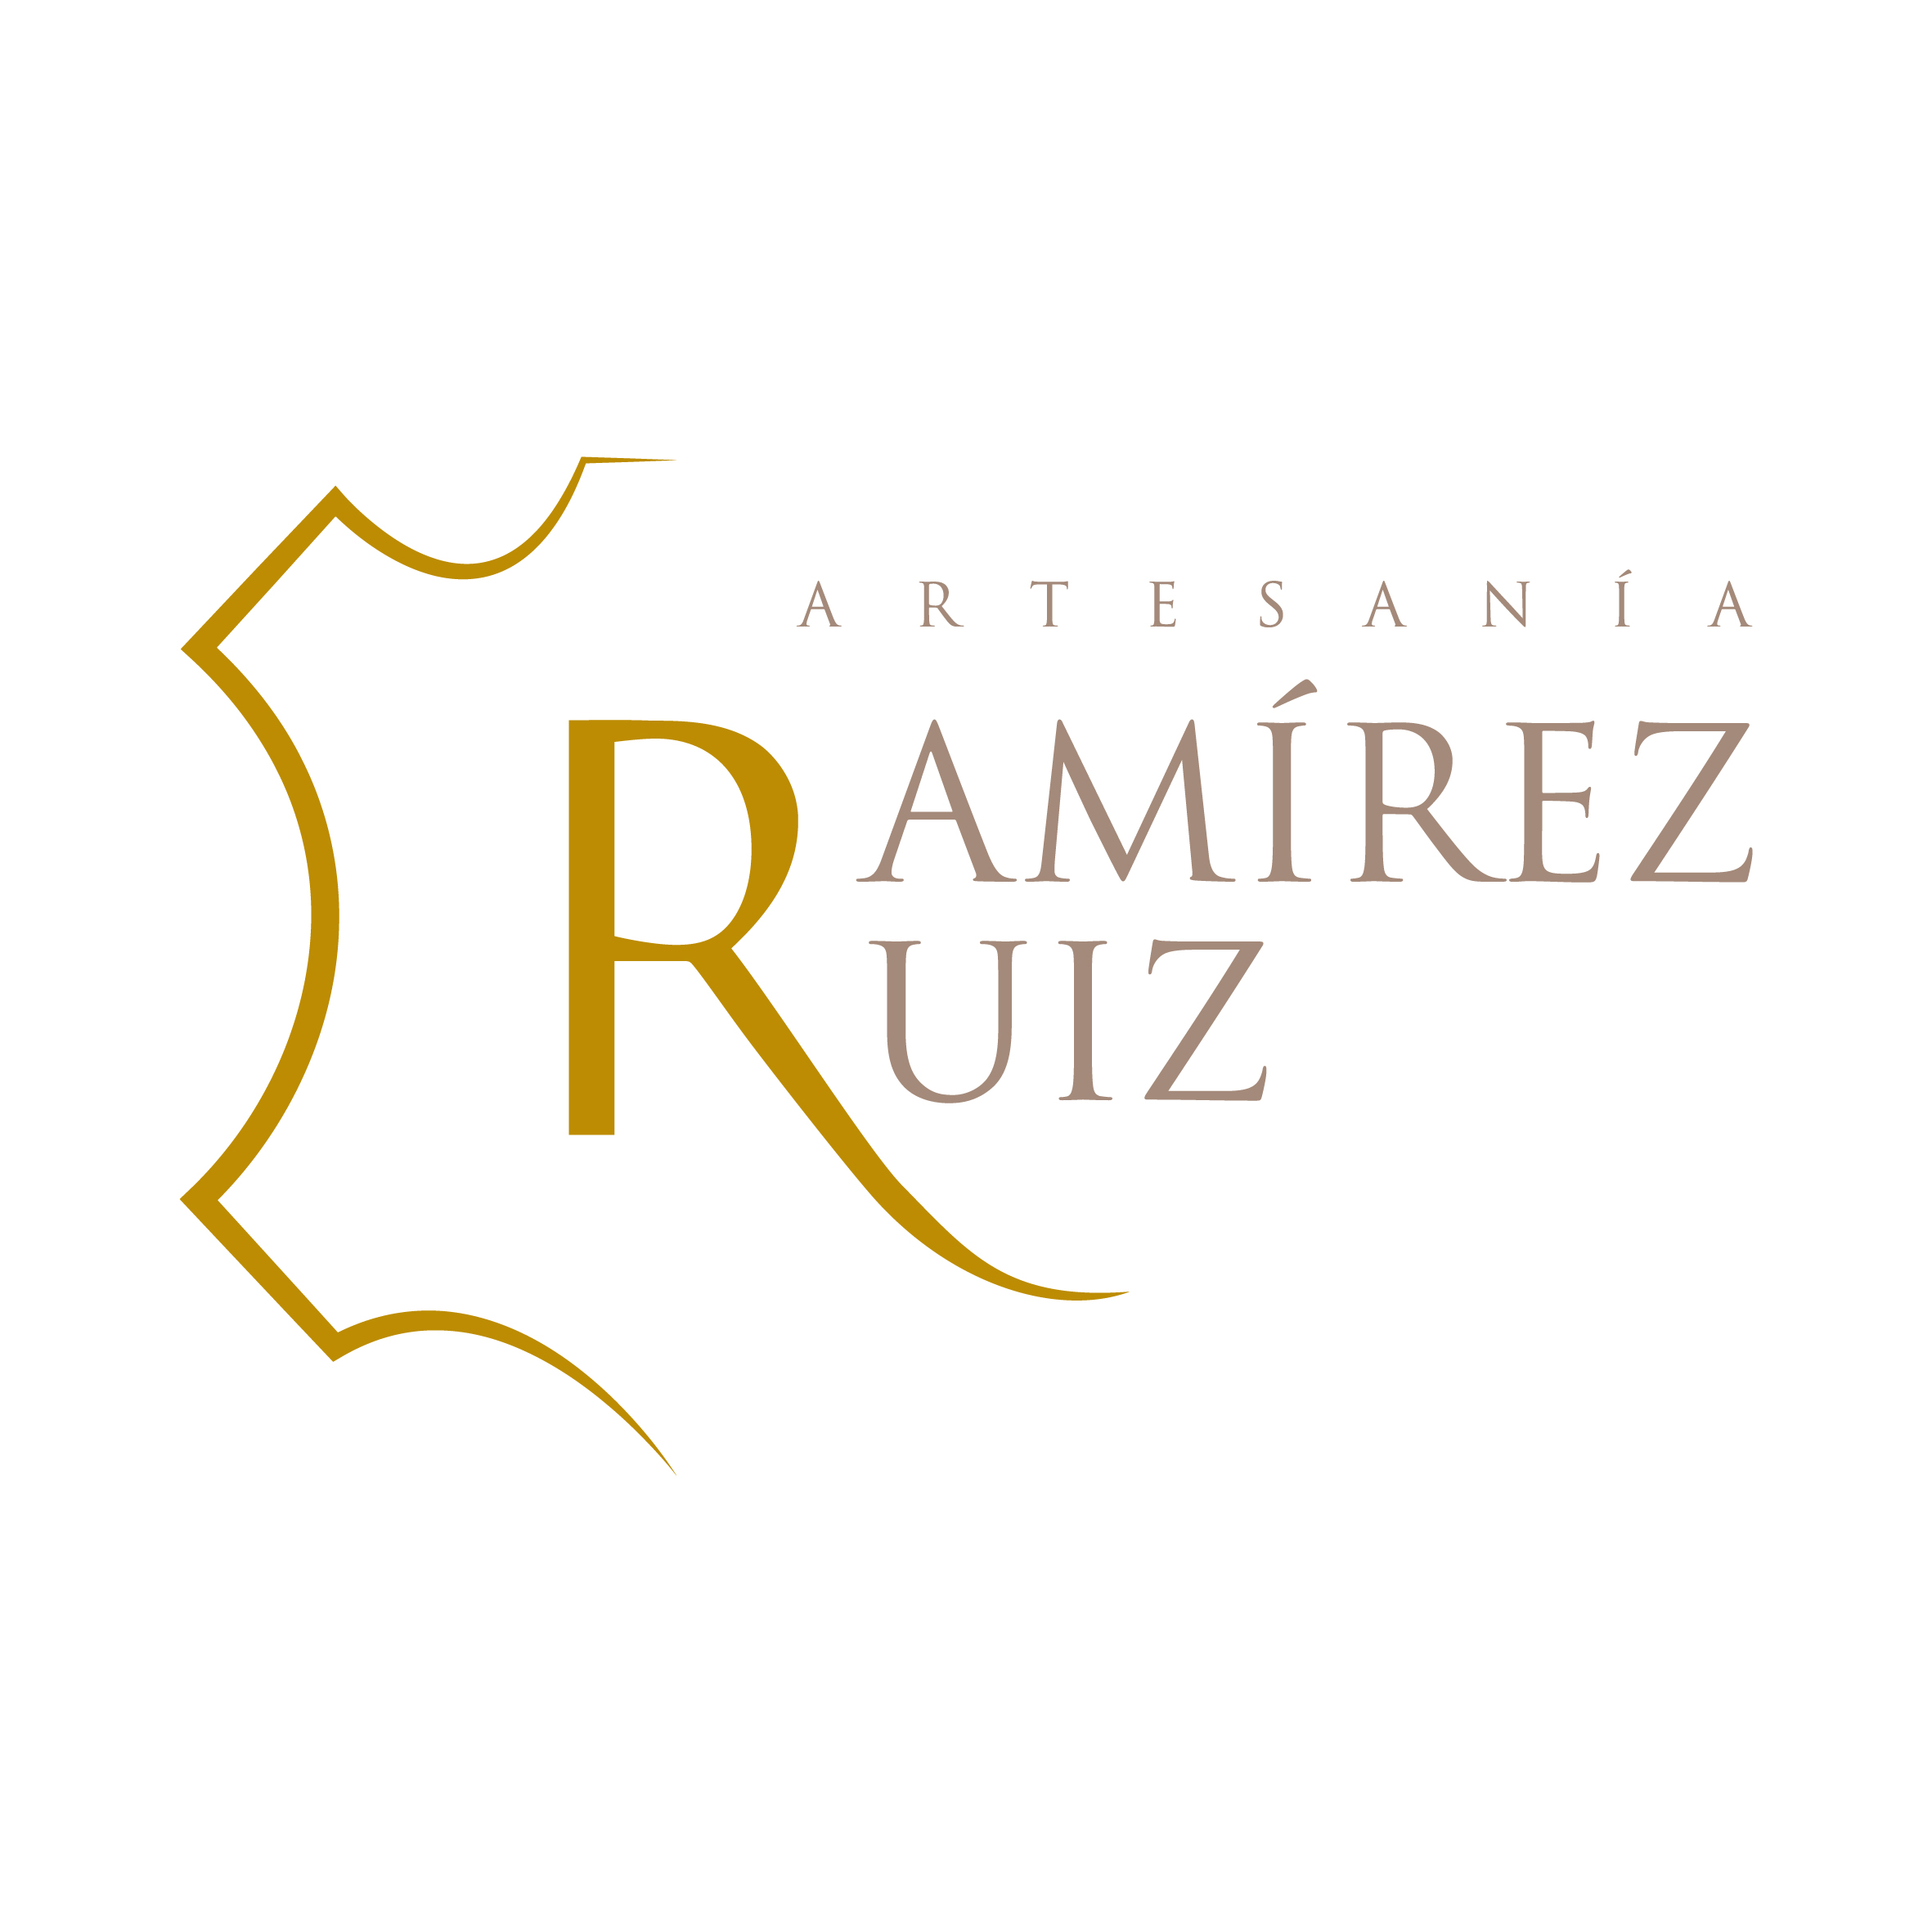 Artesanía Ramírez Ruíz